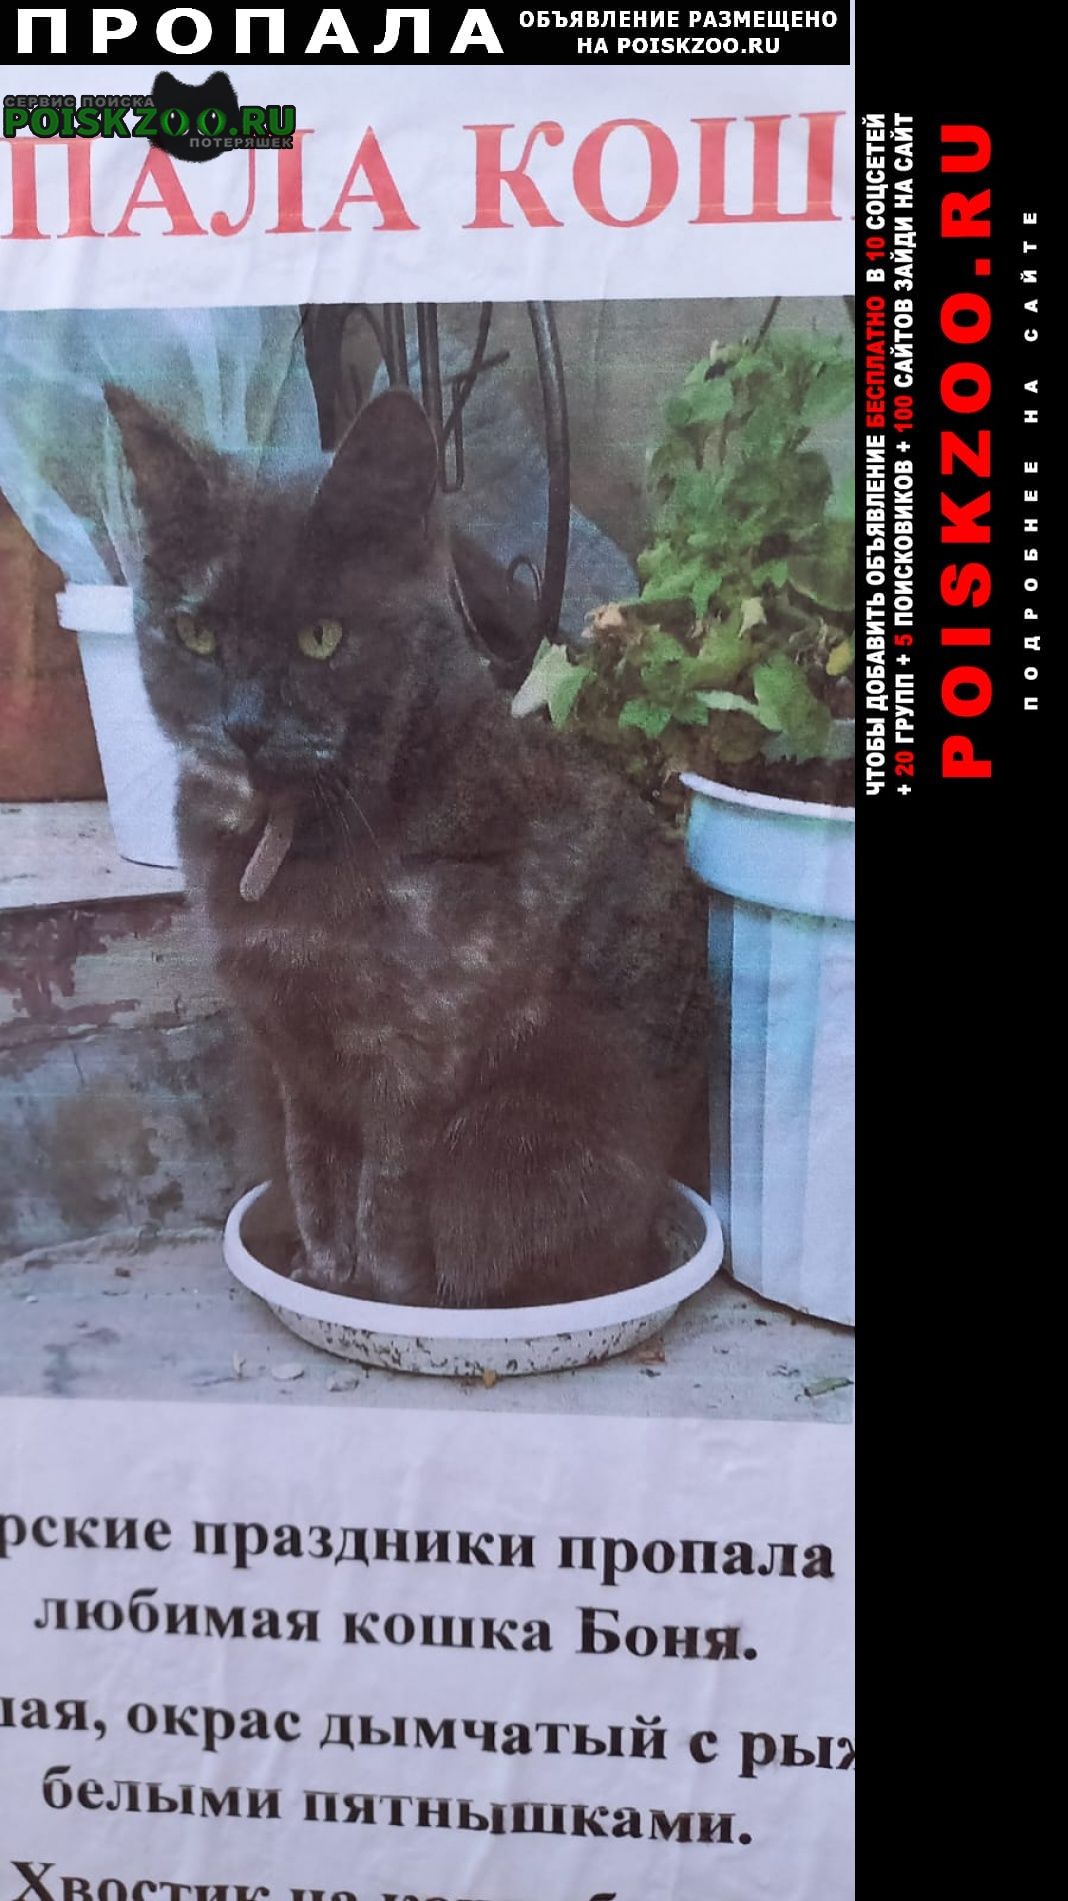 Пропала кошка боня в районе 7-8 января. Крымск